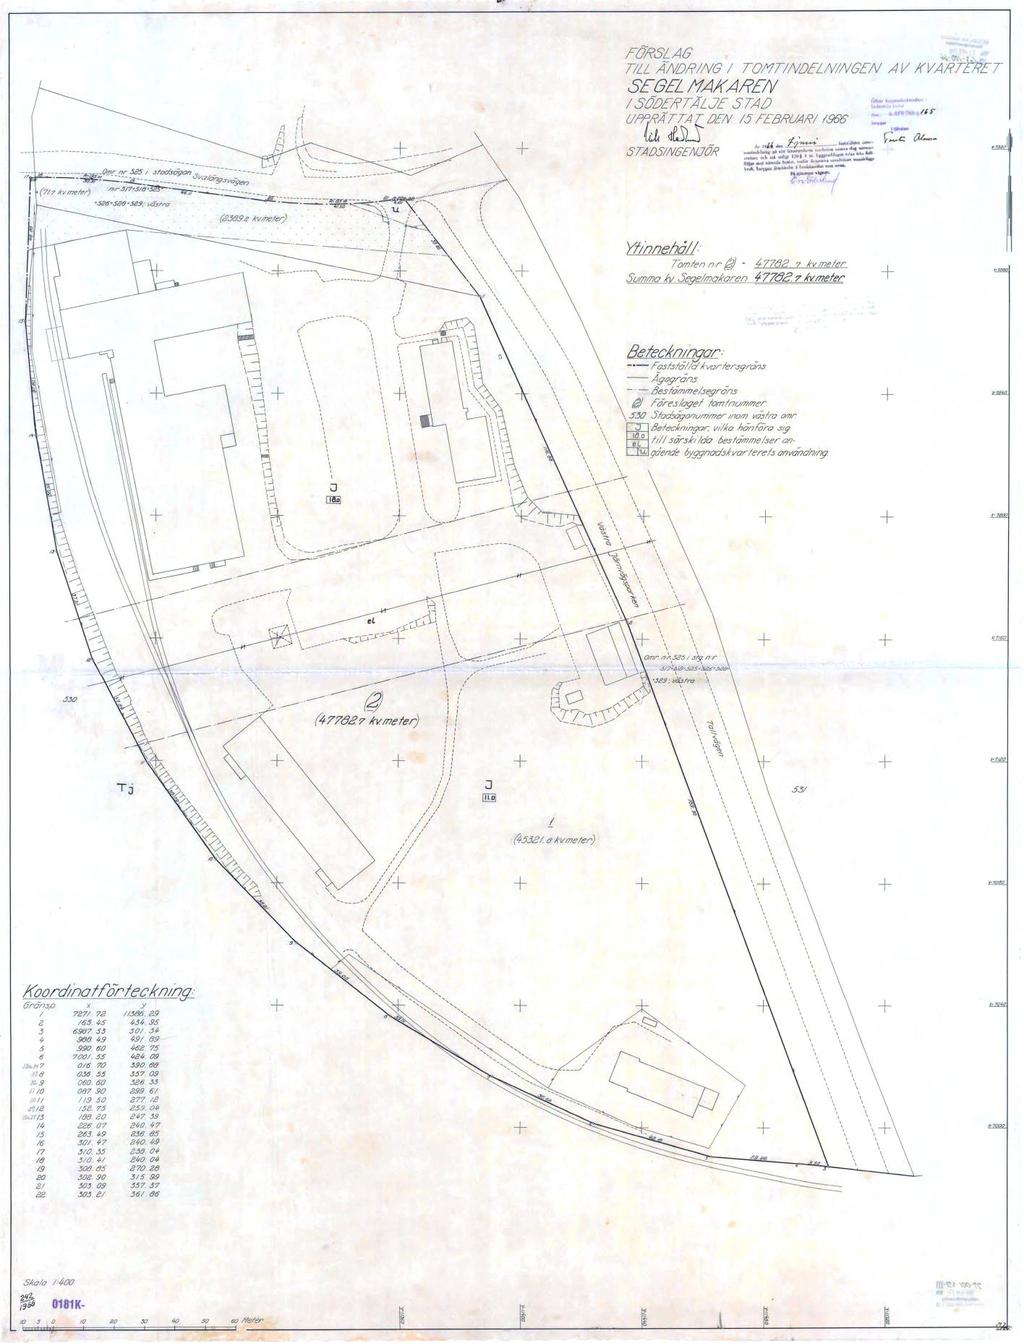 4 (6) Tomtindelning för kvarteret Segelmakaren (TI 0181K-242/1966) från 1966 som upphävs genom denna detaljplan.